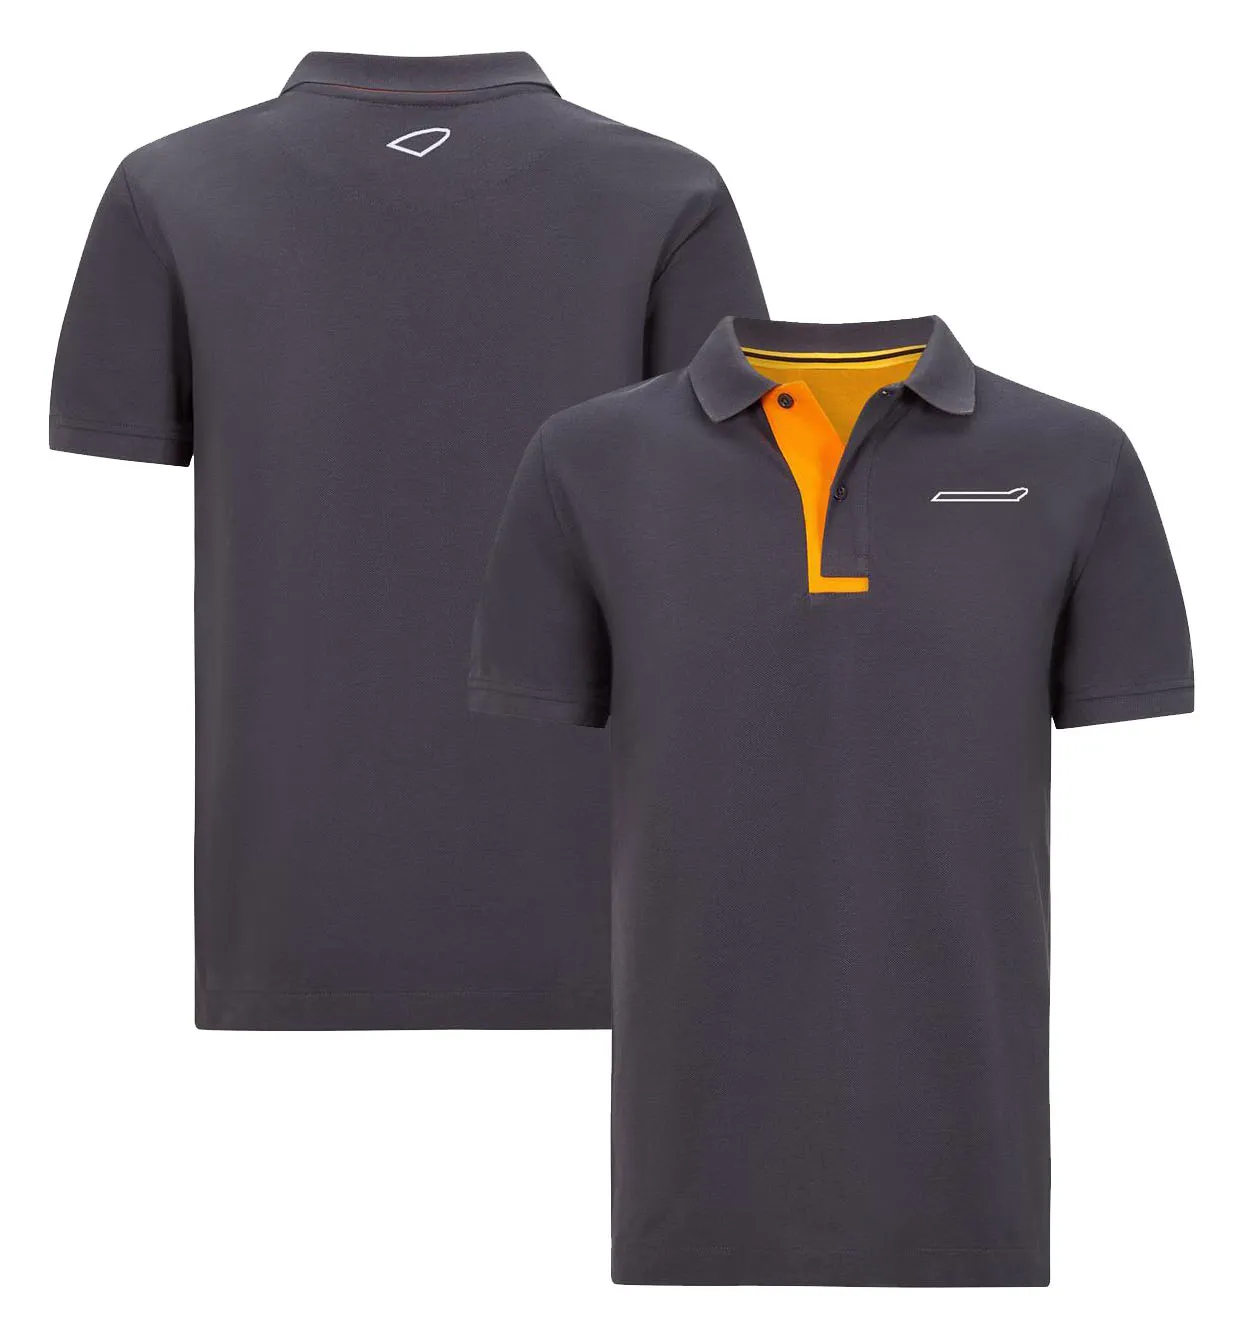 F1 팀 조인트 쇼핑 폴로 셔츠 남자 팬 팬 레이싱 슈트 로고가 사용자 정의 할 수 있습니다.